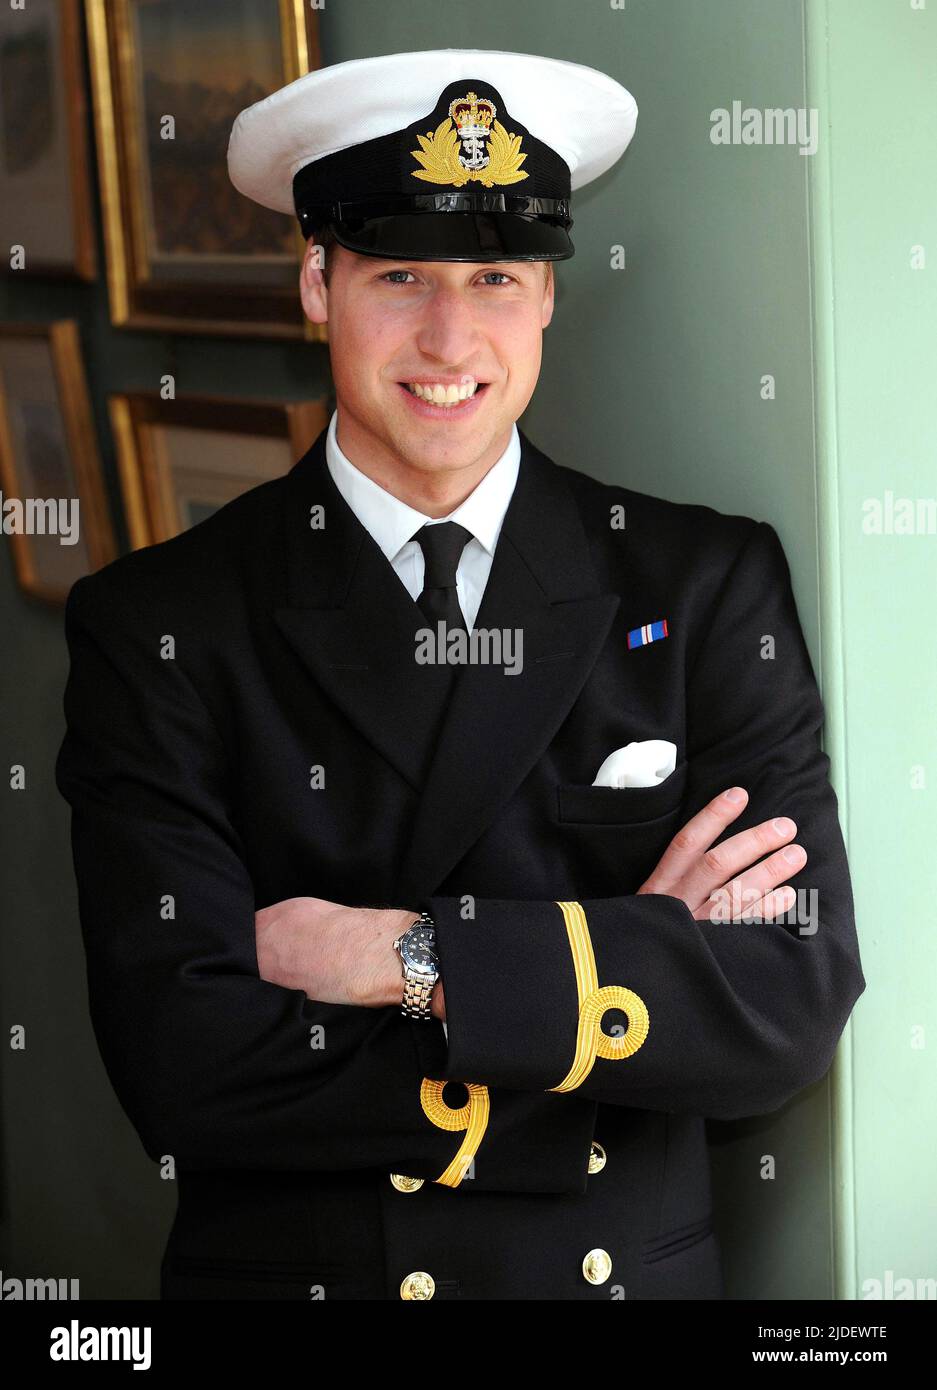 Foto del file datata 31/5/2008 del Principe William nella sua uniforme Royal Navy. Martedì il Duca di Cambridge festeggia il suo 40th compleanno. Data di emissione: Lunedì 20 giugno 2022. Foto Stock